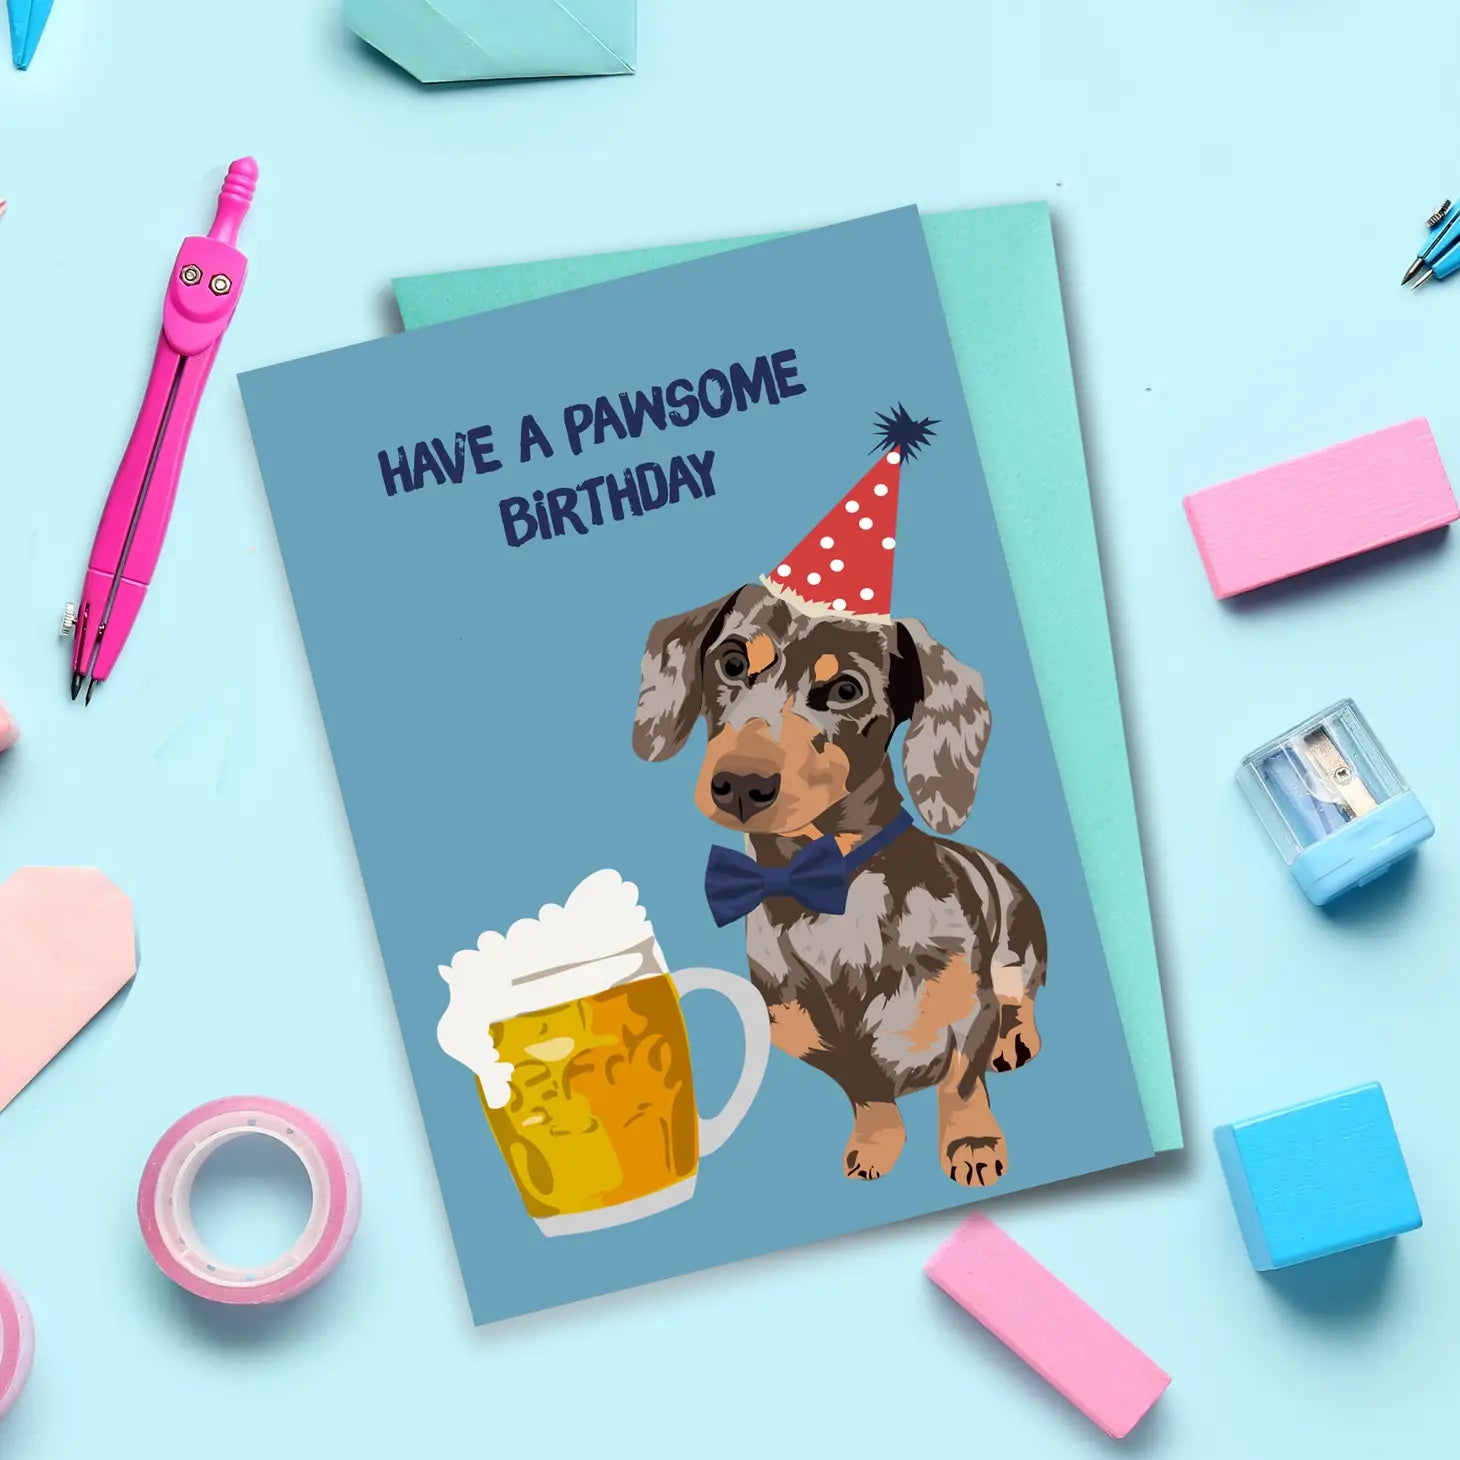 Haben Sie eine Pawsome Geburtstag Wurst Hund Karte